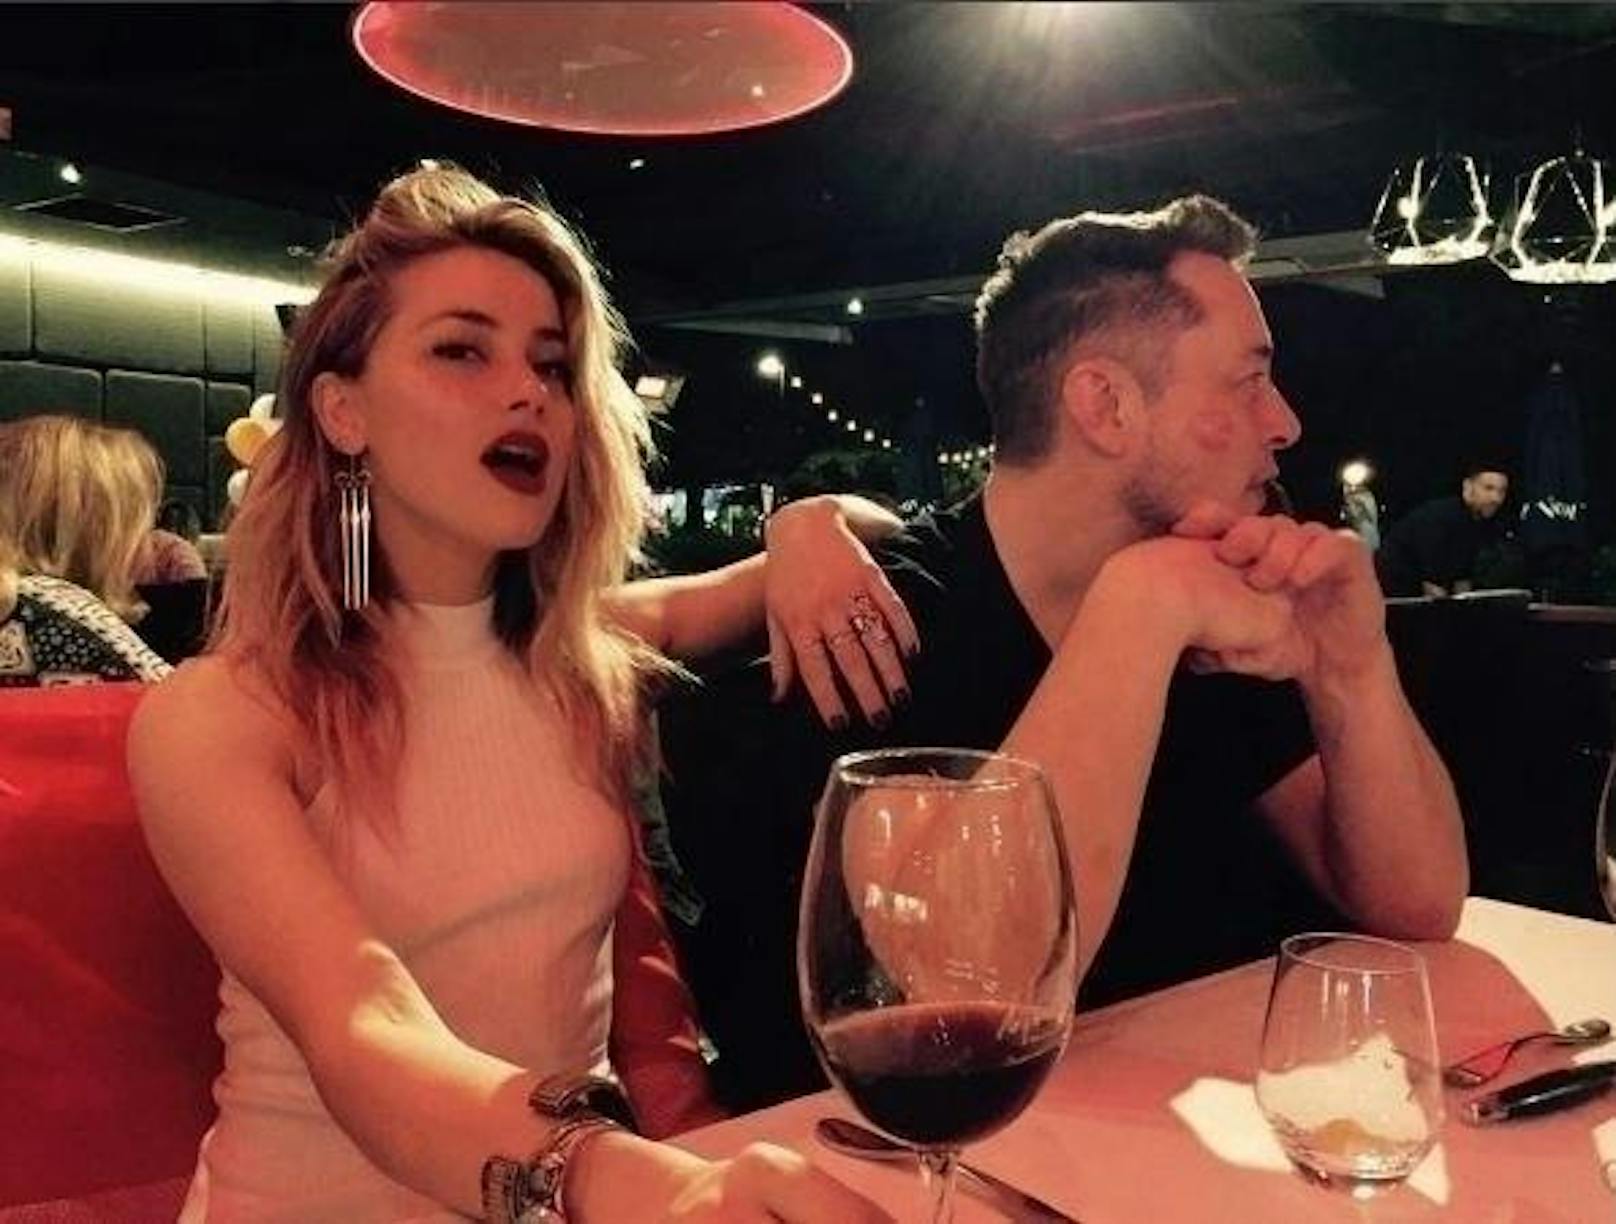 <b>Amber Heard und Elon Musk</b>
<b>Ein Paar seit:</b> Nach dem Scheidungsdrama mit Johnny Depp ist Schauspielerin Amber Heard wieder frisch verliebt. Erst kürzlich machte sie ihre Liebe zu Tesla-Gründer Elon Musk via Social Media öffentlich.
<b>Geschätztes Vermögen:</b> Heards Vermögen wird laut Celebritynetworth.com auf 9 Millionen Dollar geschätzt. Das ihres neuen Freundes auf stolze 13,3 Milliarden.